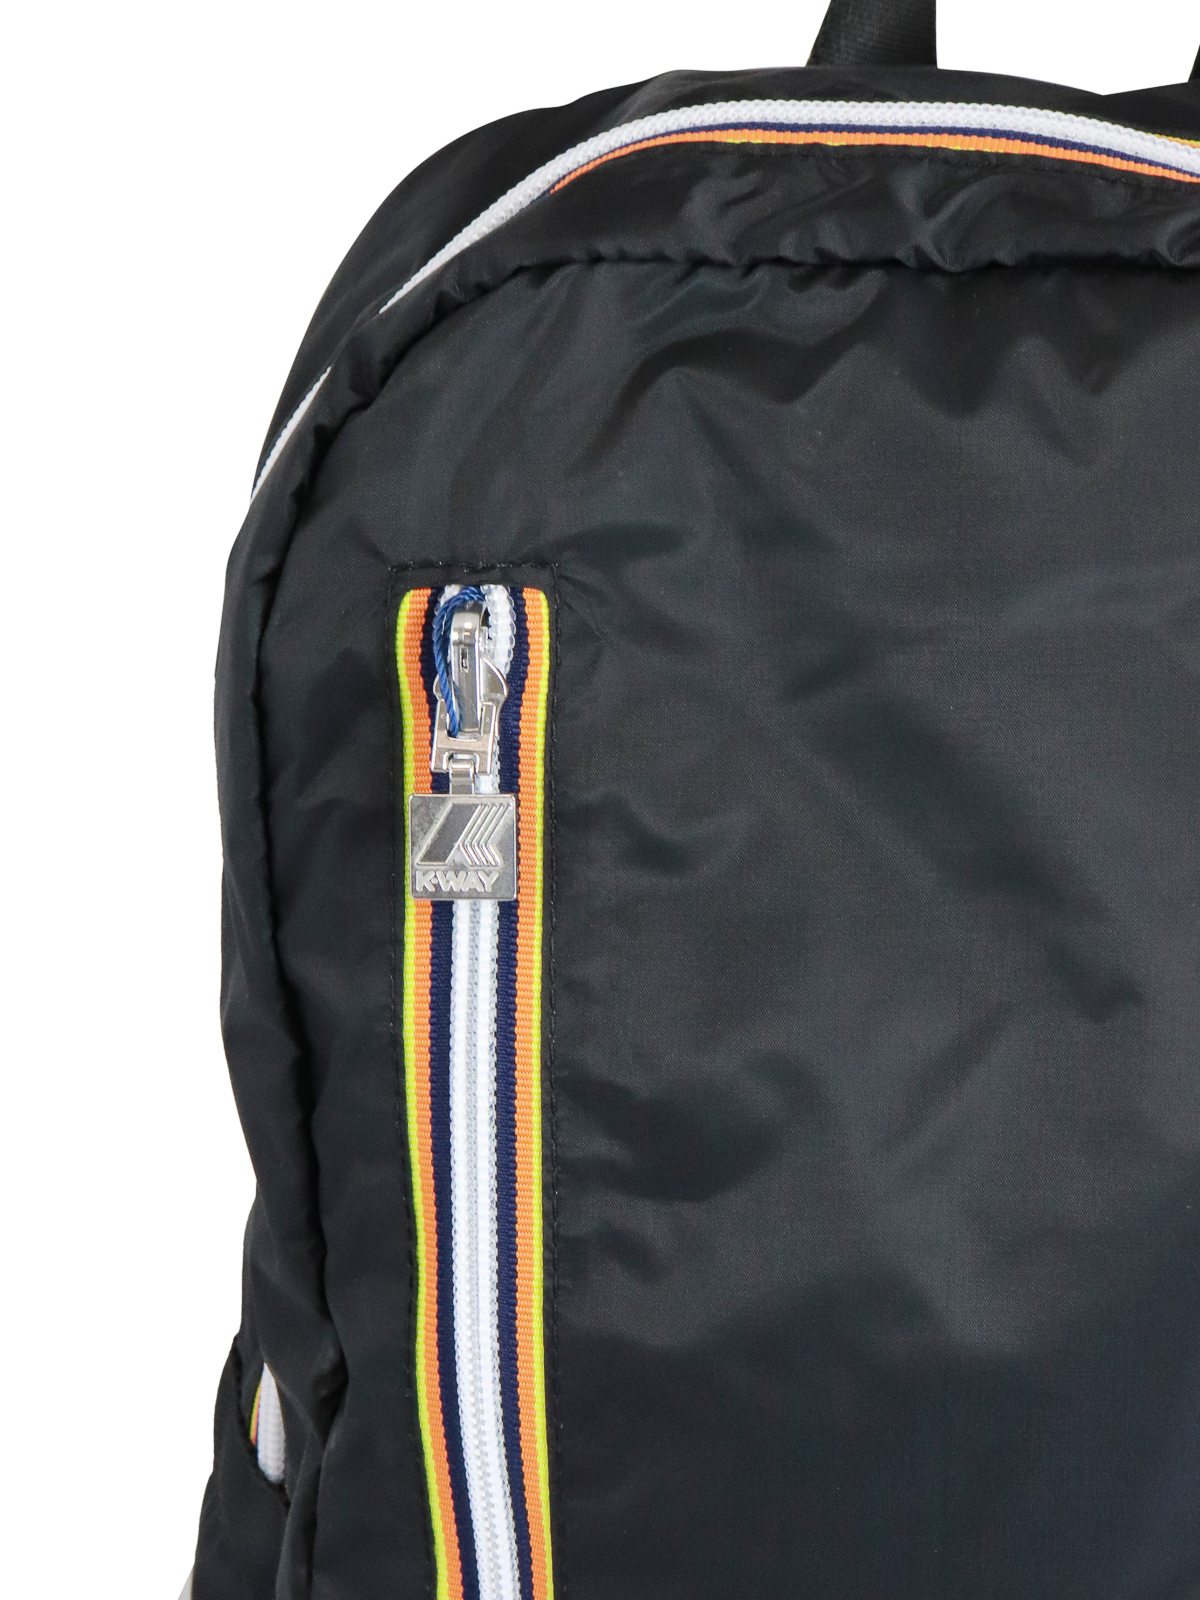 Backpacks k-way - K-Pocket backpack - K11274W903 | Shop online at iKRIX